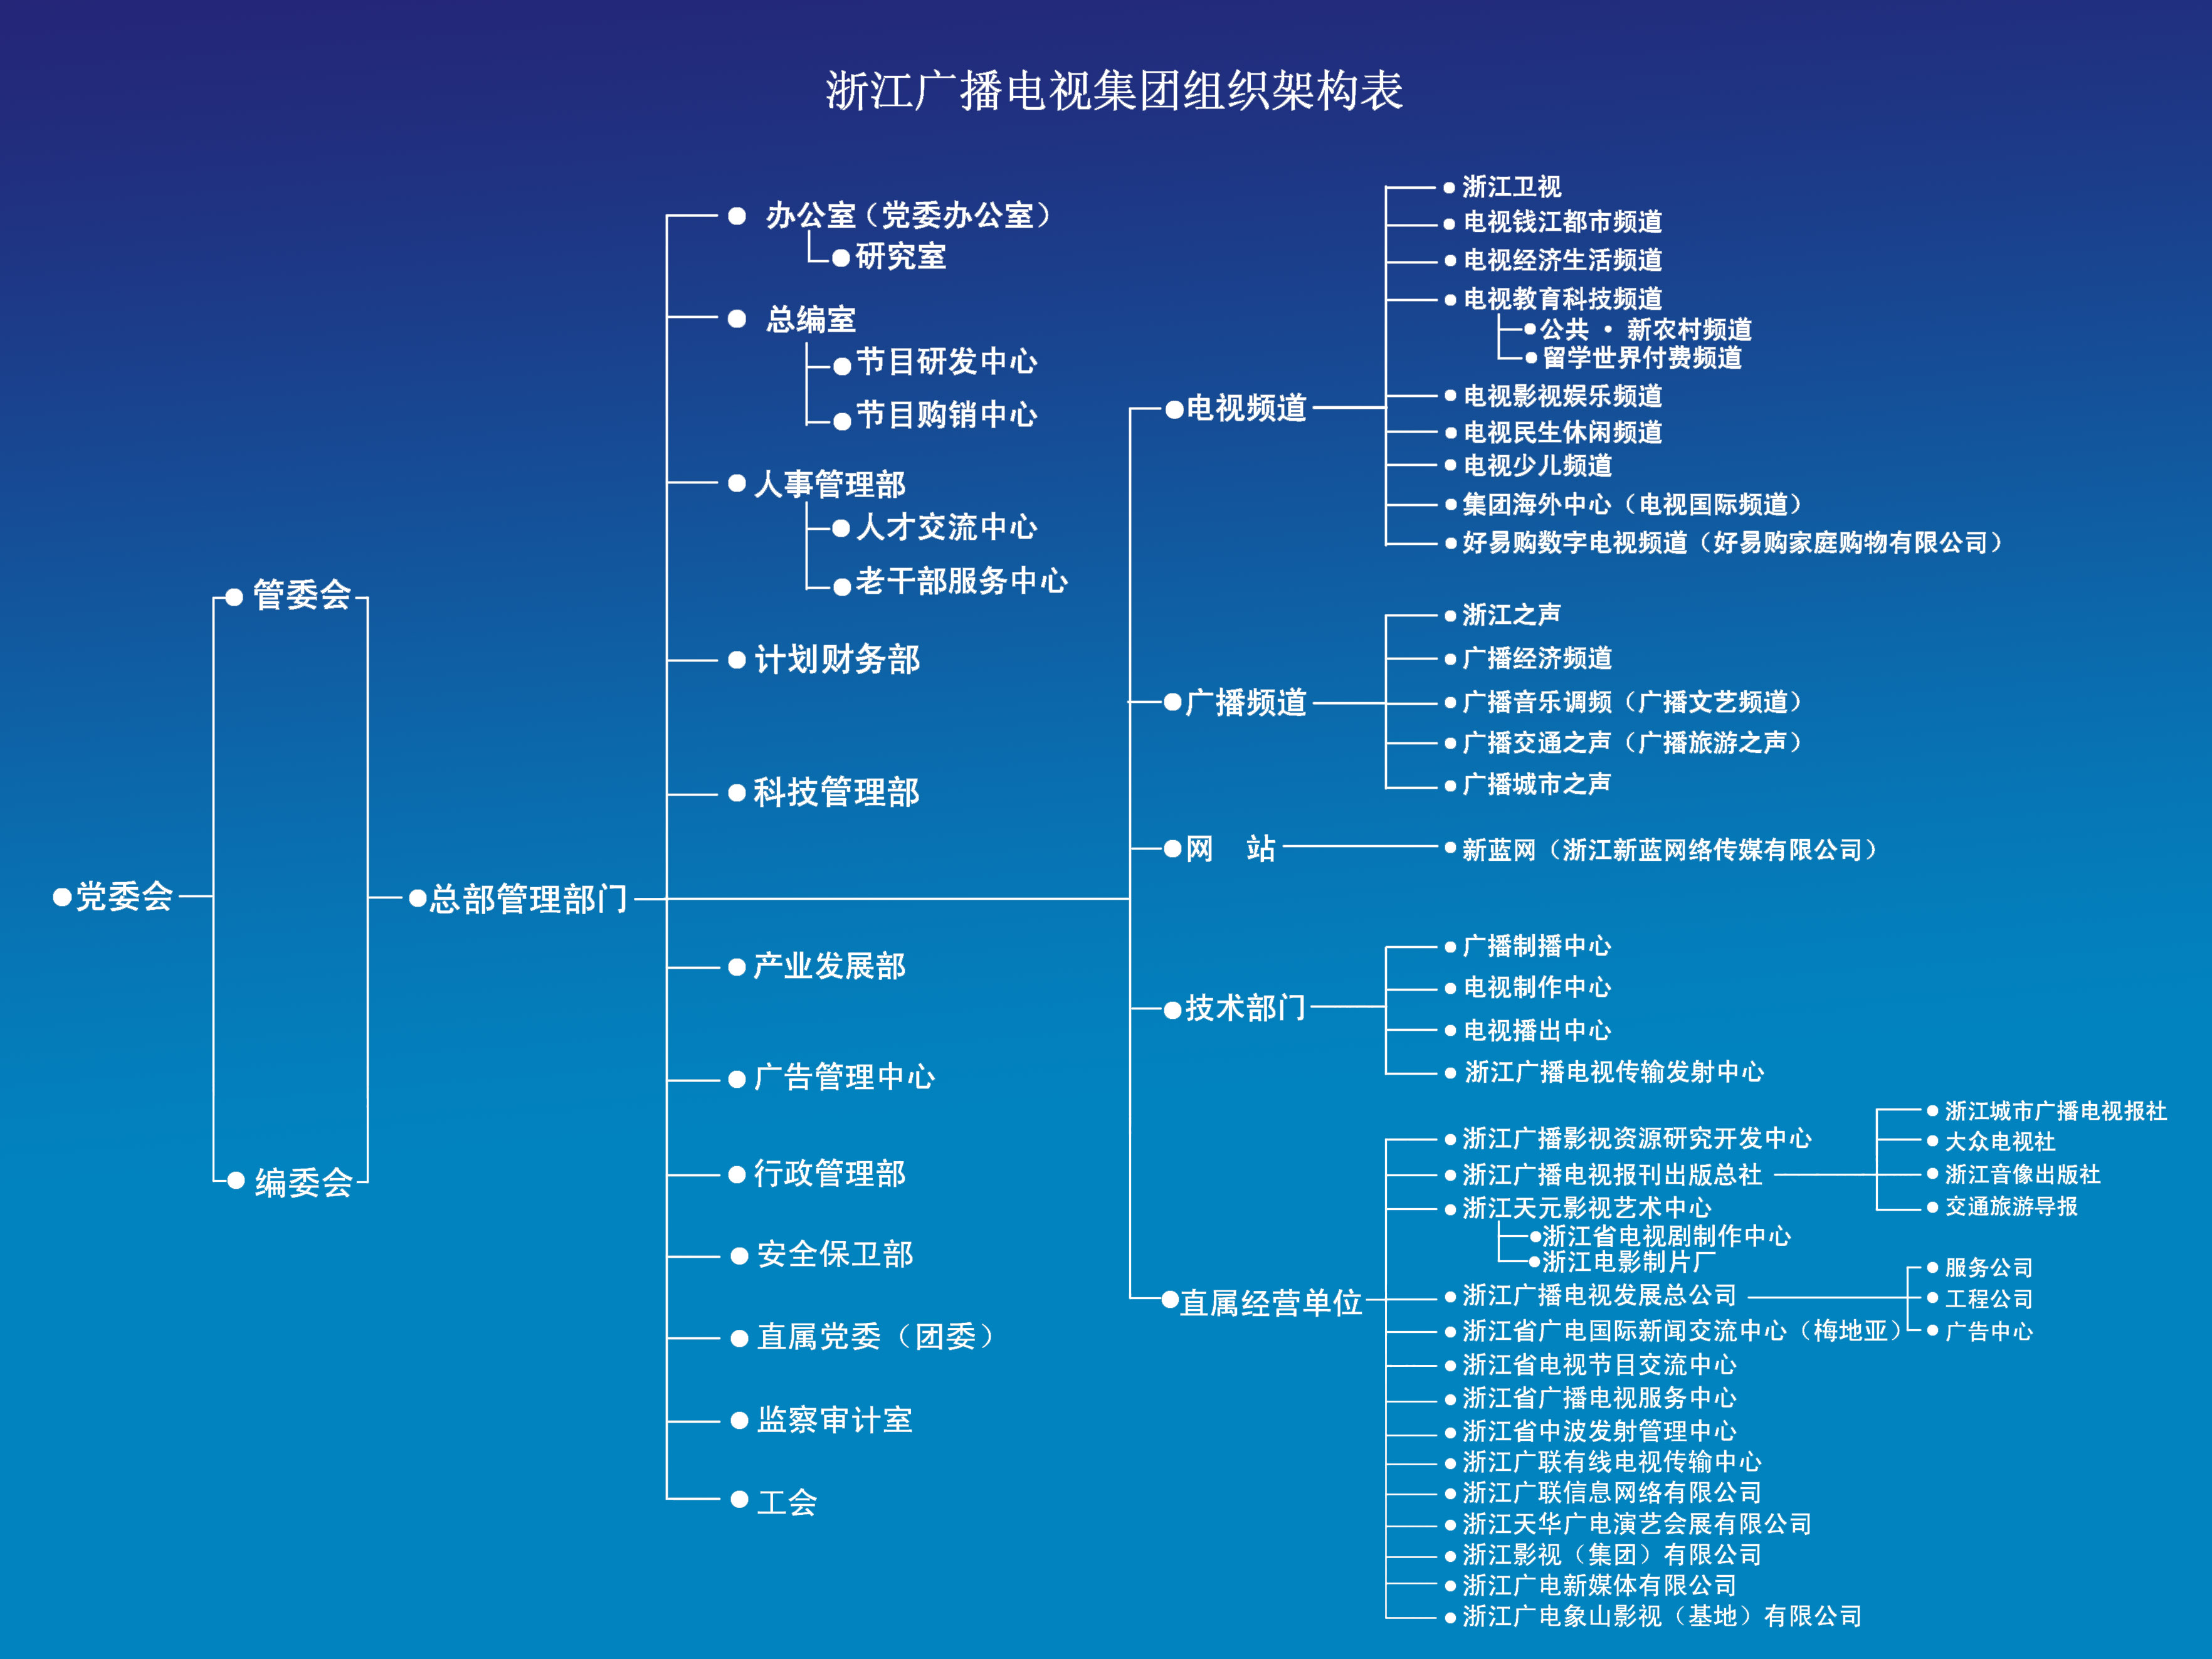 浙江广播电视集团组织构架表